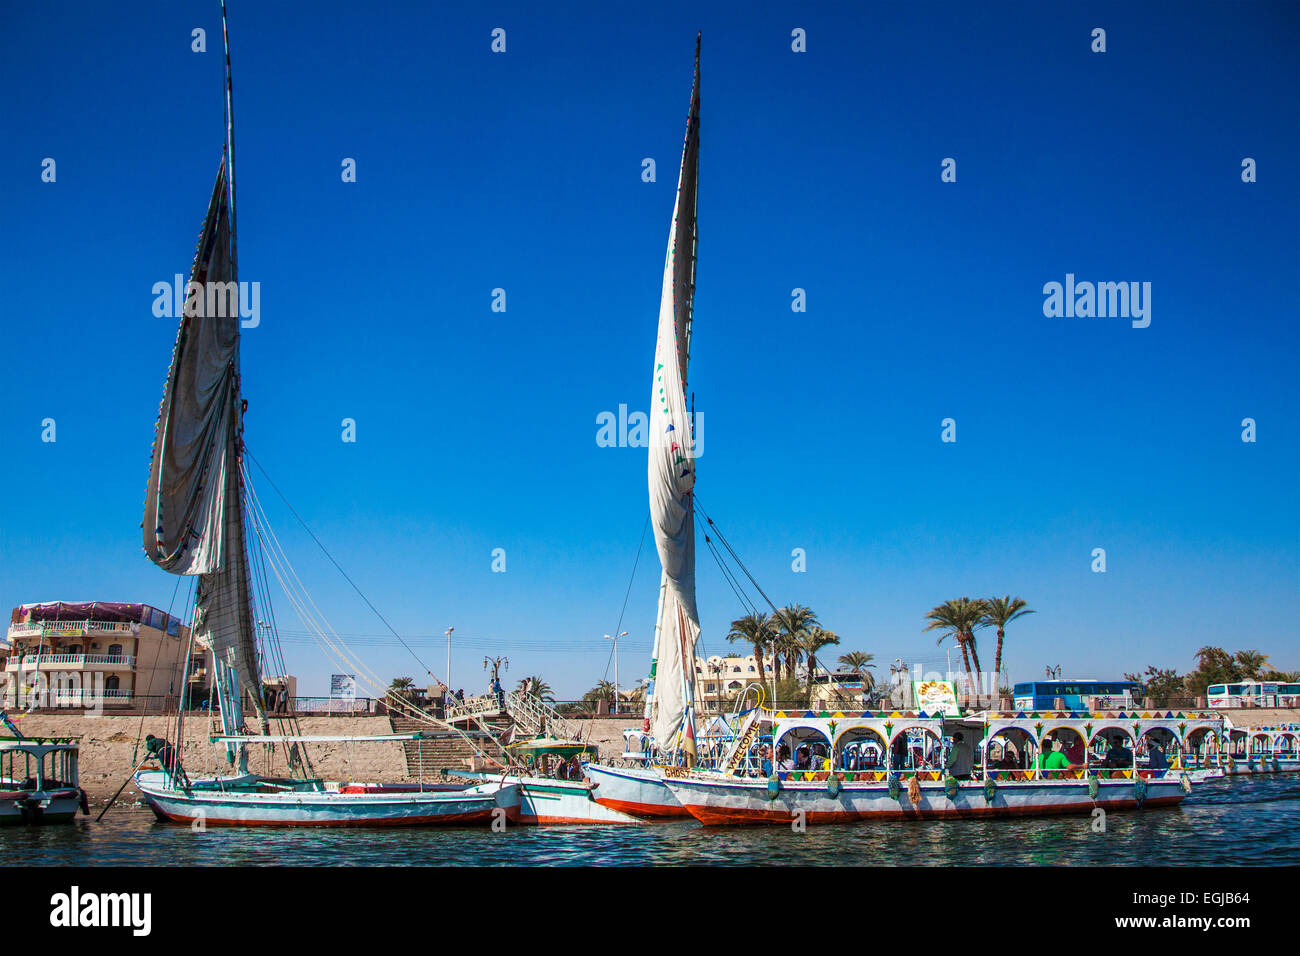 Coloridos barcos y transbordadores feluchos amarrado en la Ribera Occidental esperando para llevar a los turistas a través del Nilo hasta Luxor. Foto de stock